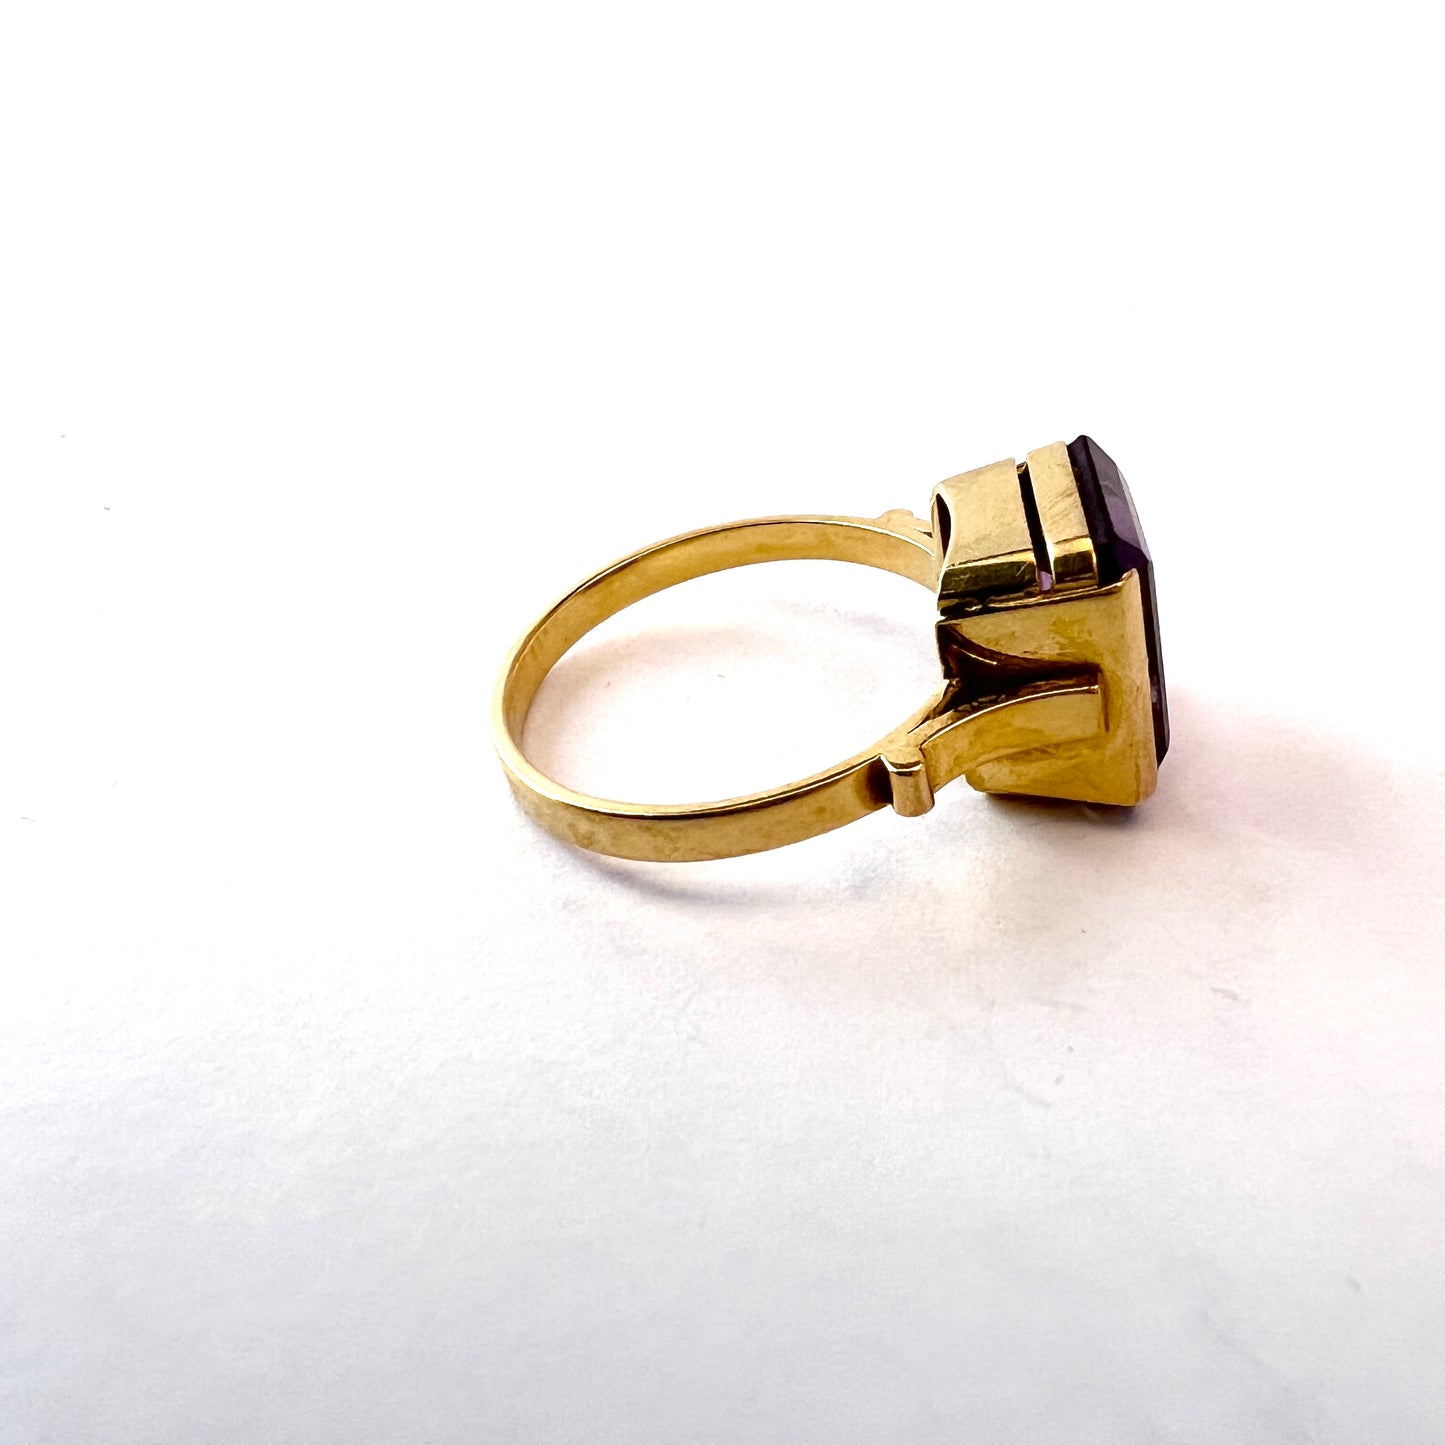 Örns Juvelatelje, Sweden 1964. Vintage 18k Gold Amethyst Ring.